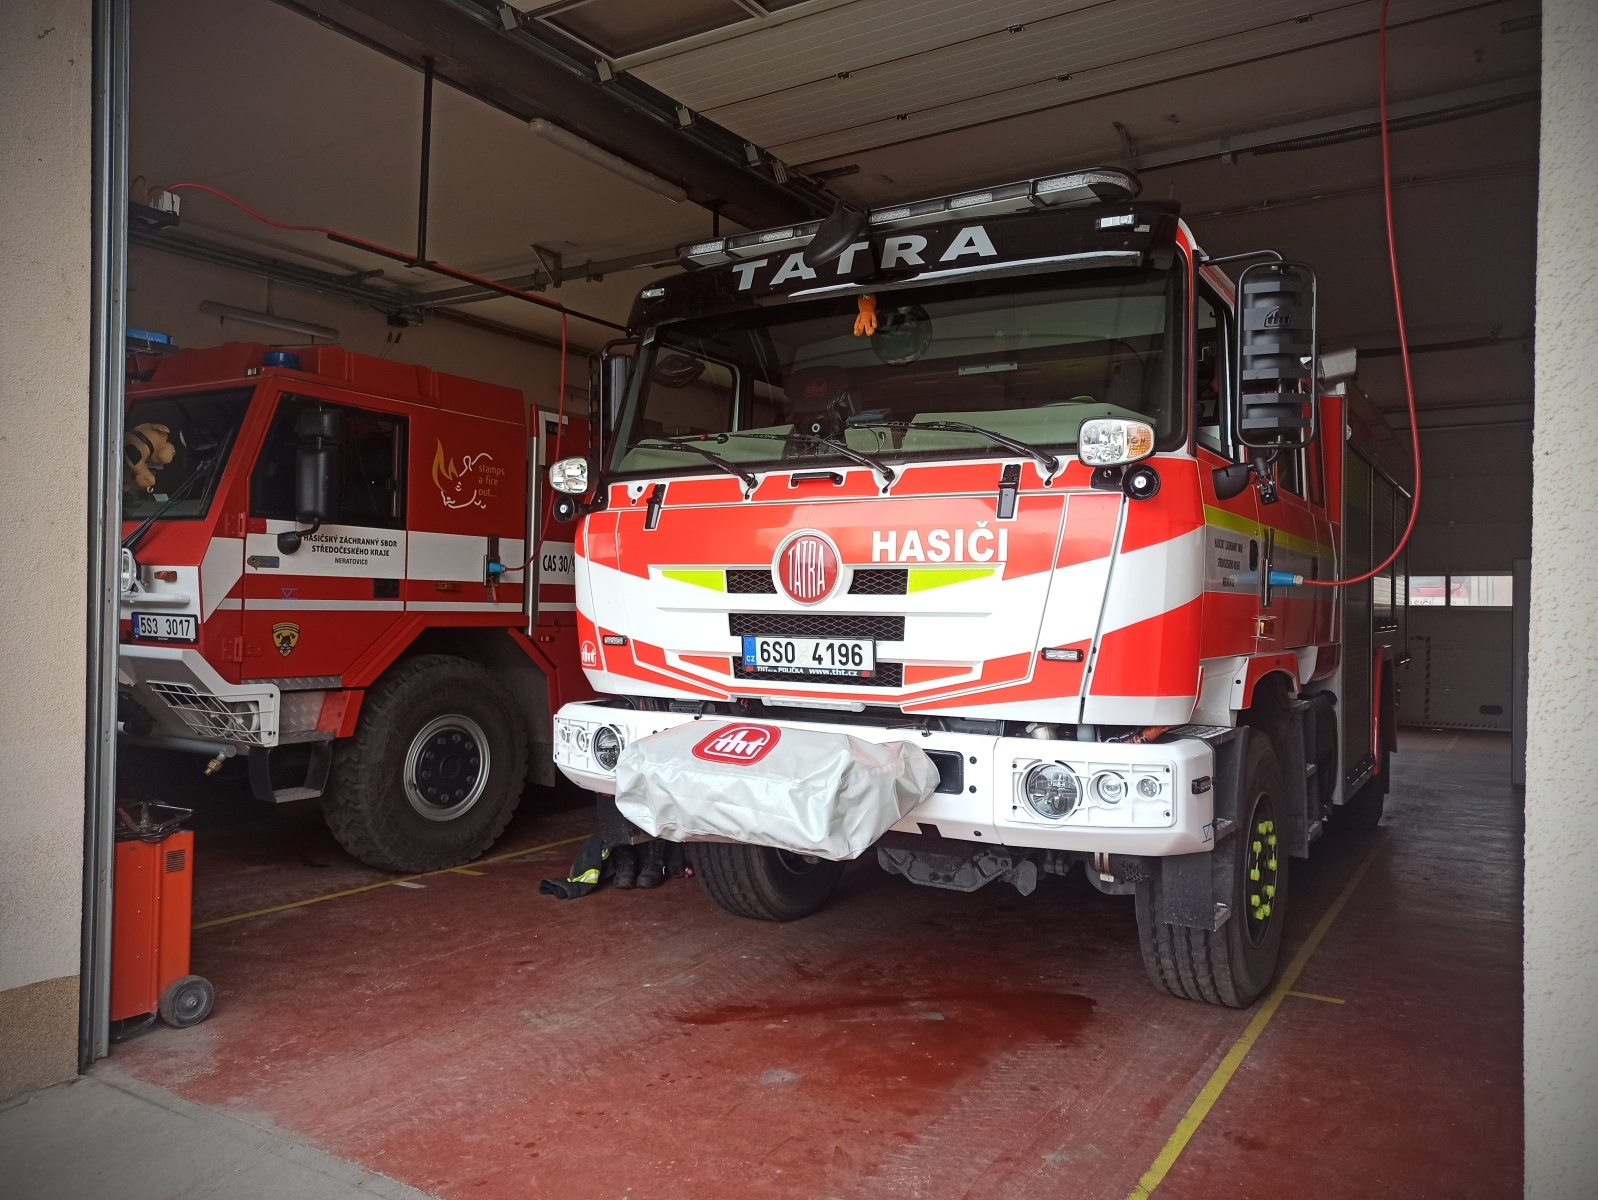 029-Nová cisternová automobilová stříkačka dislokovaná na hasičské stanici Neratovice.jpg